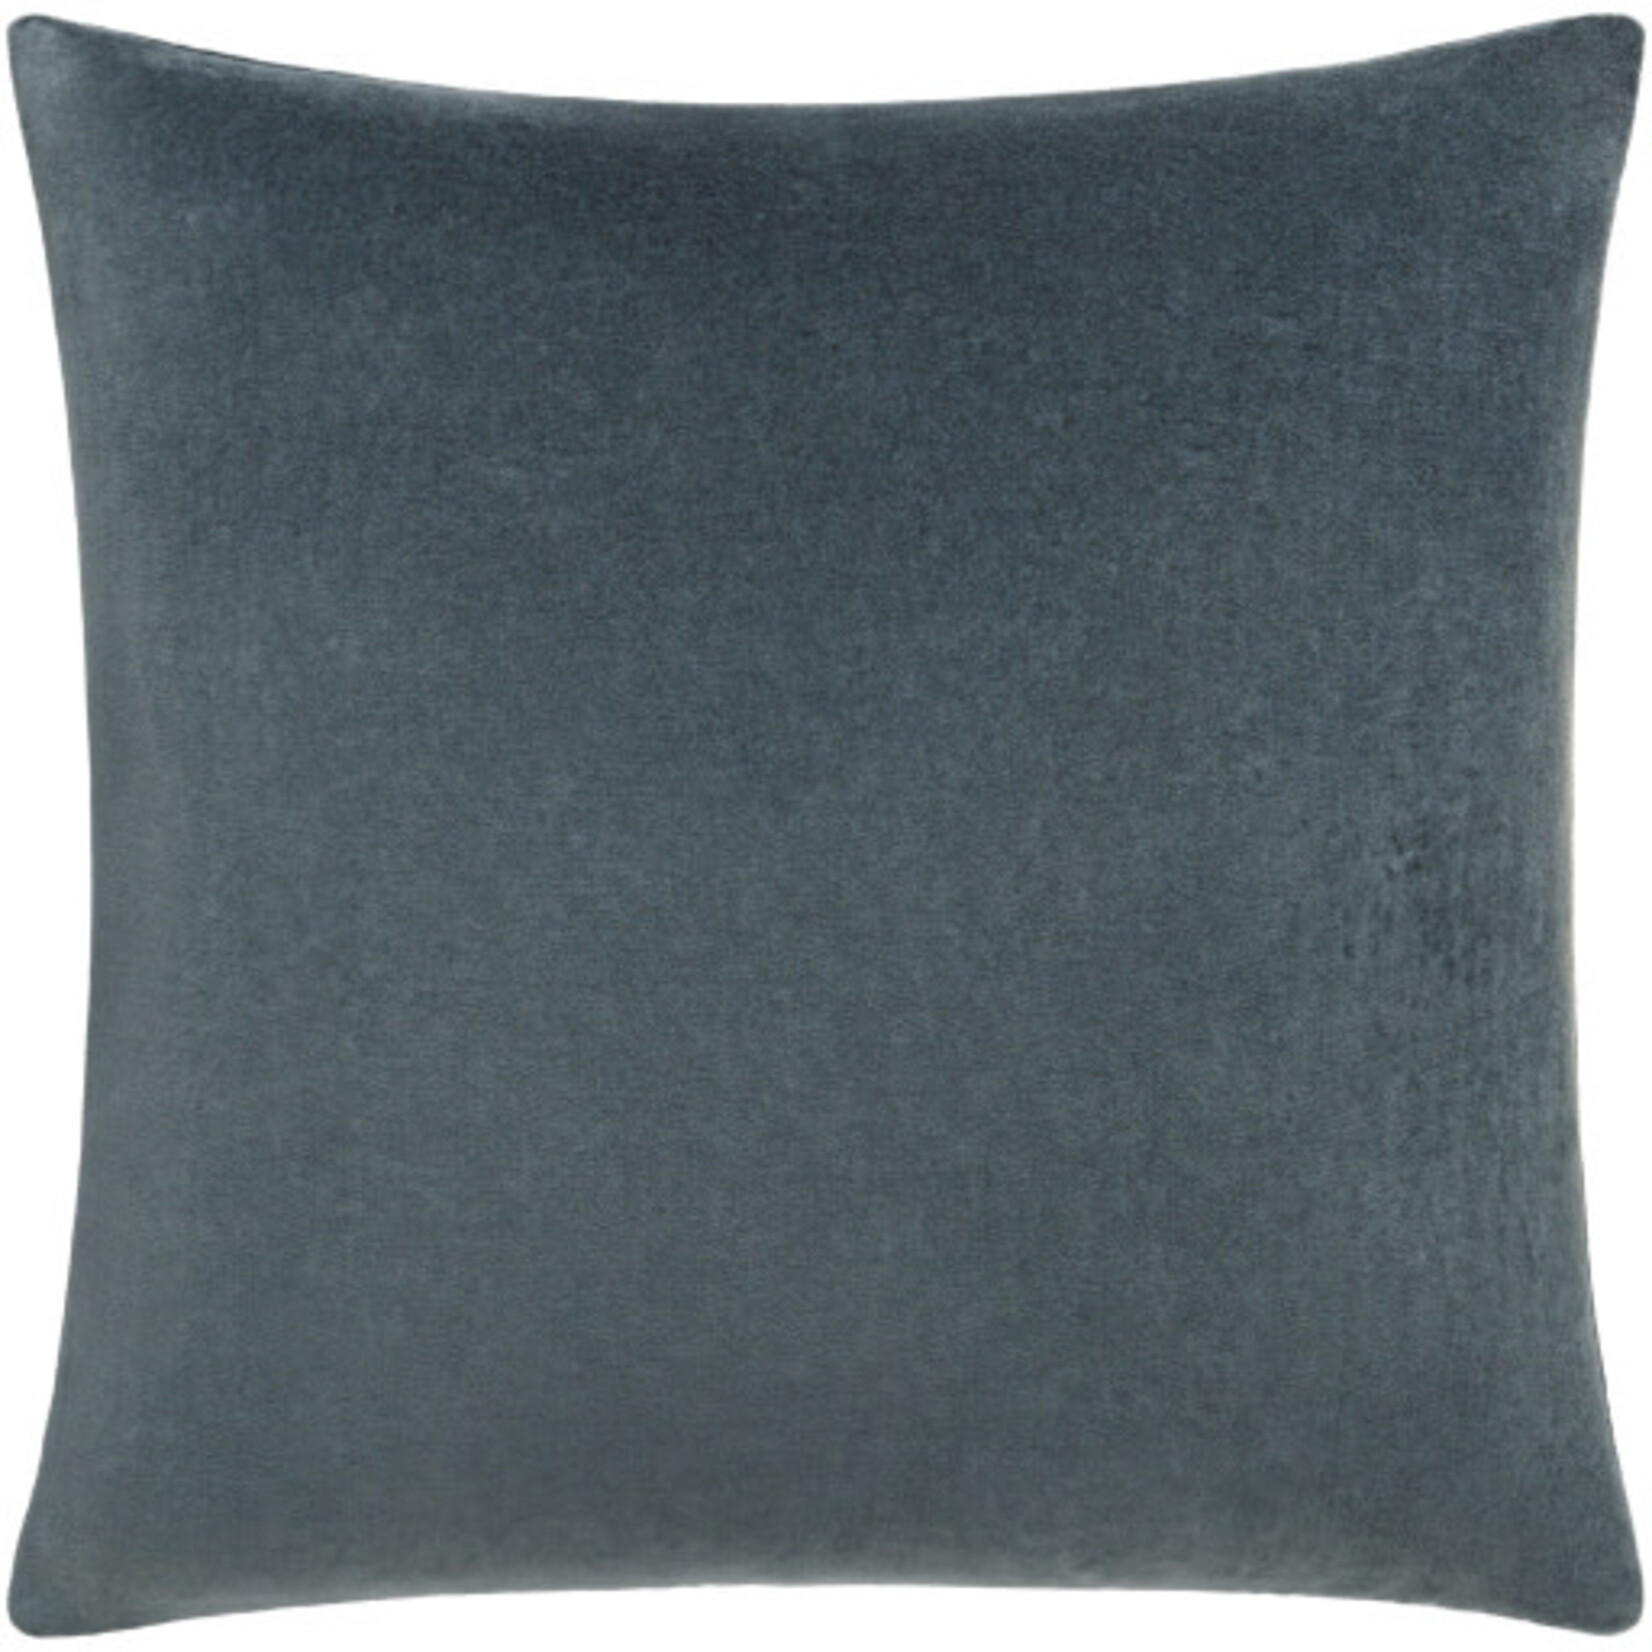 Surya CV058-2020P 20x20 Pillow